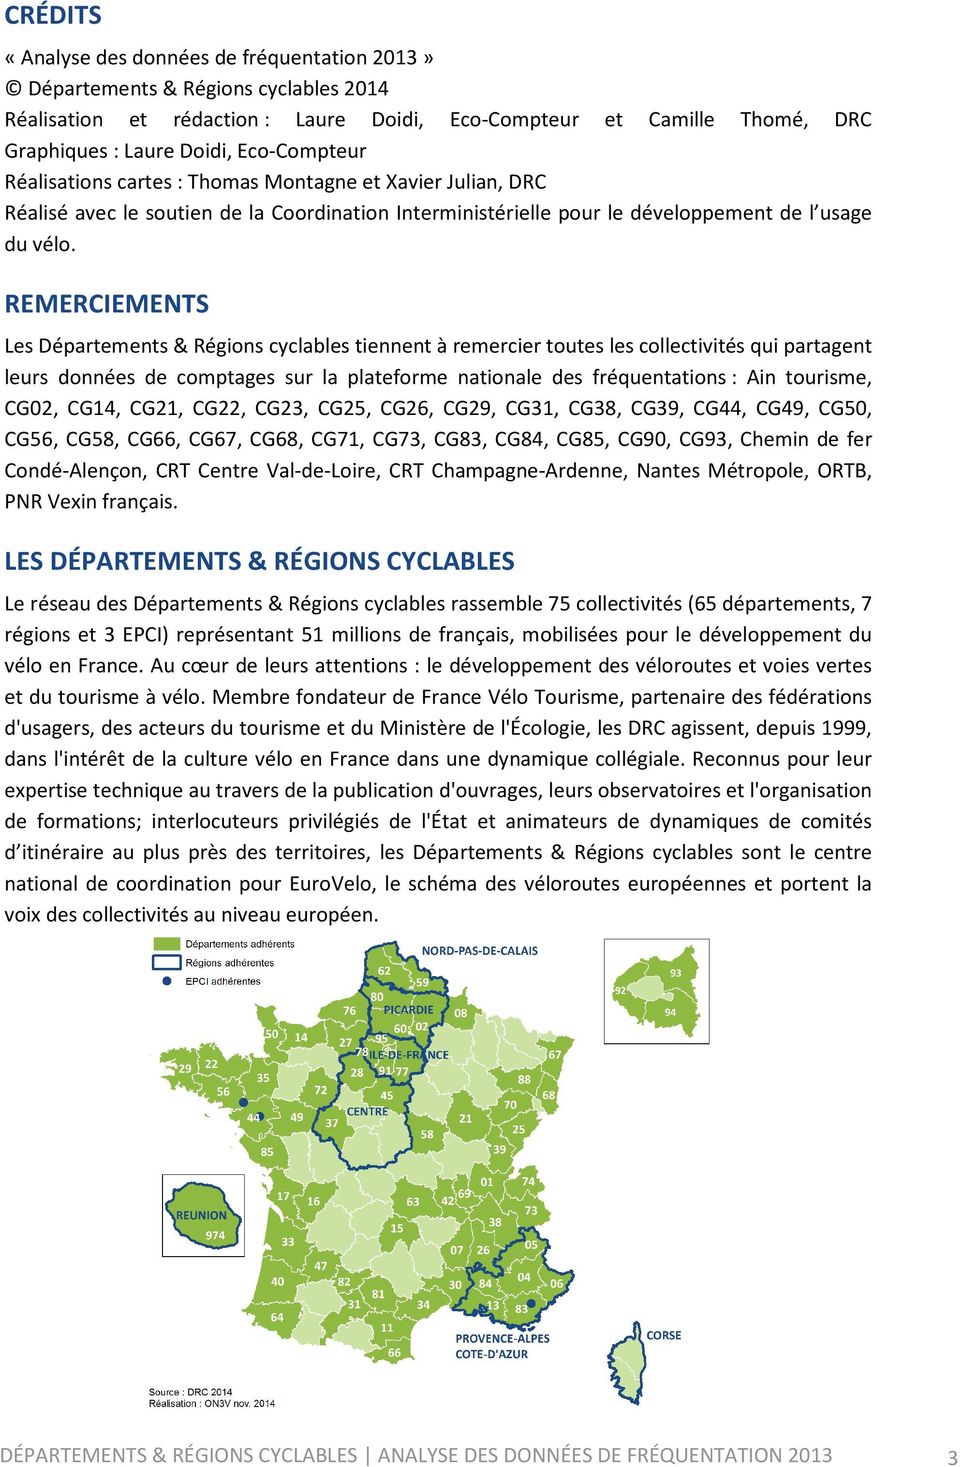 REMERCIEMENTS Les Départements & Régions cyclables tiennent à remercier toutes les collectivités qui partagent leurs données de comptages sur la plateforme nationale des fréquentations : Ain